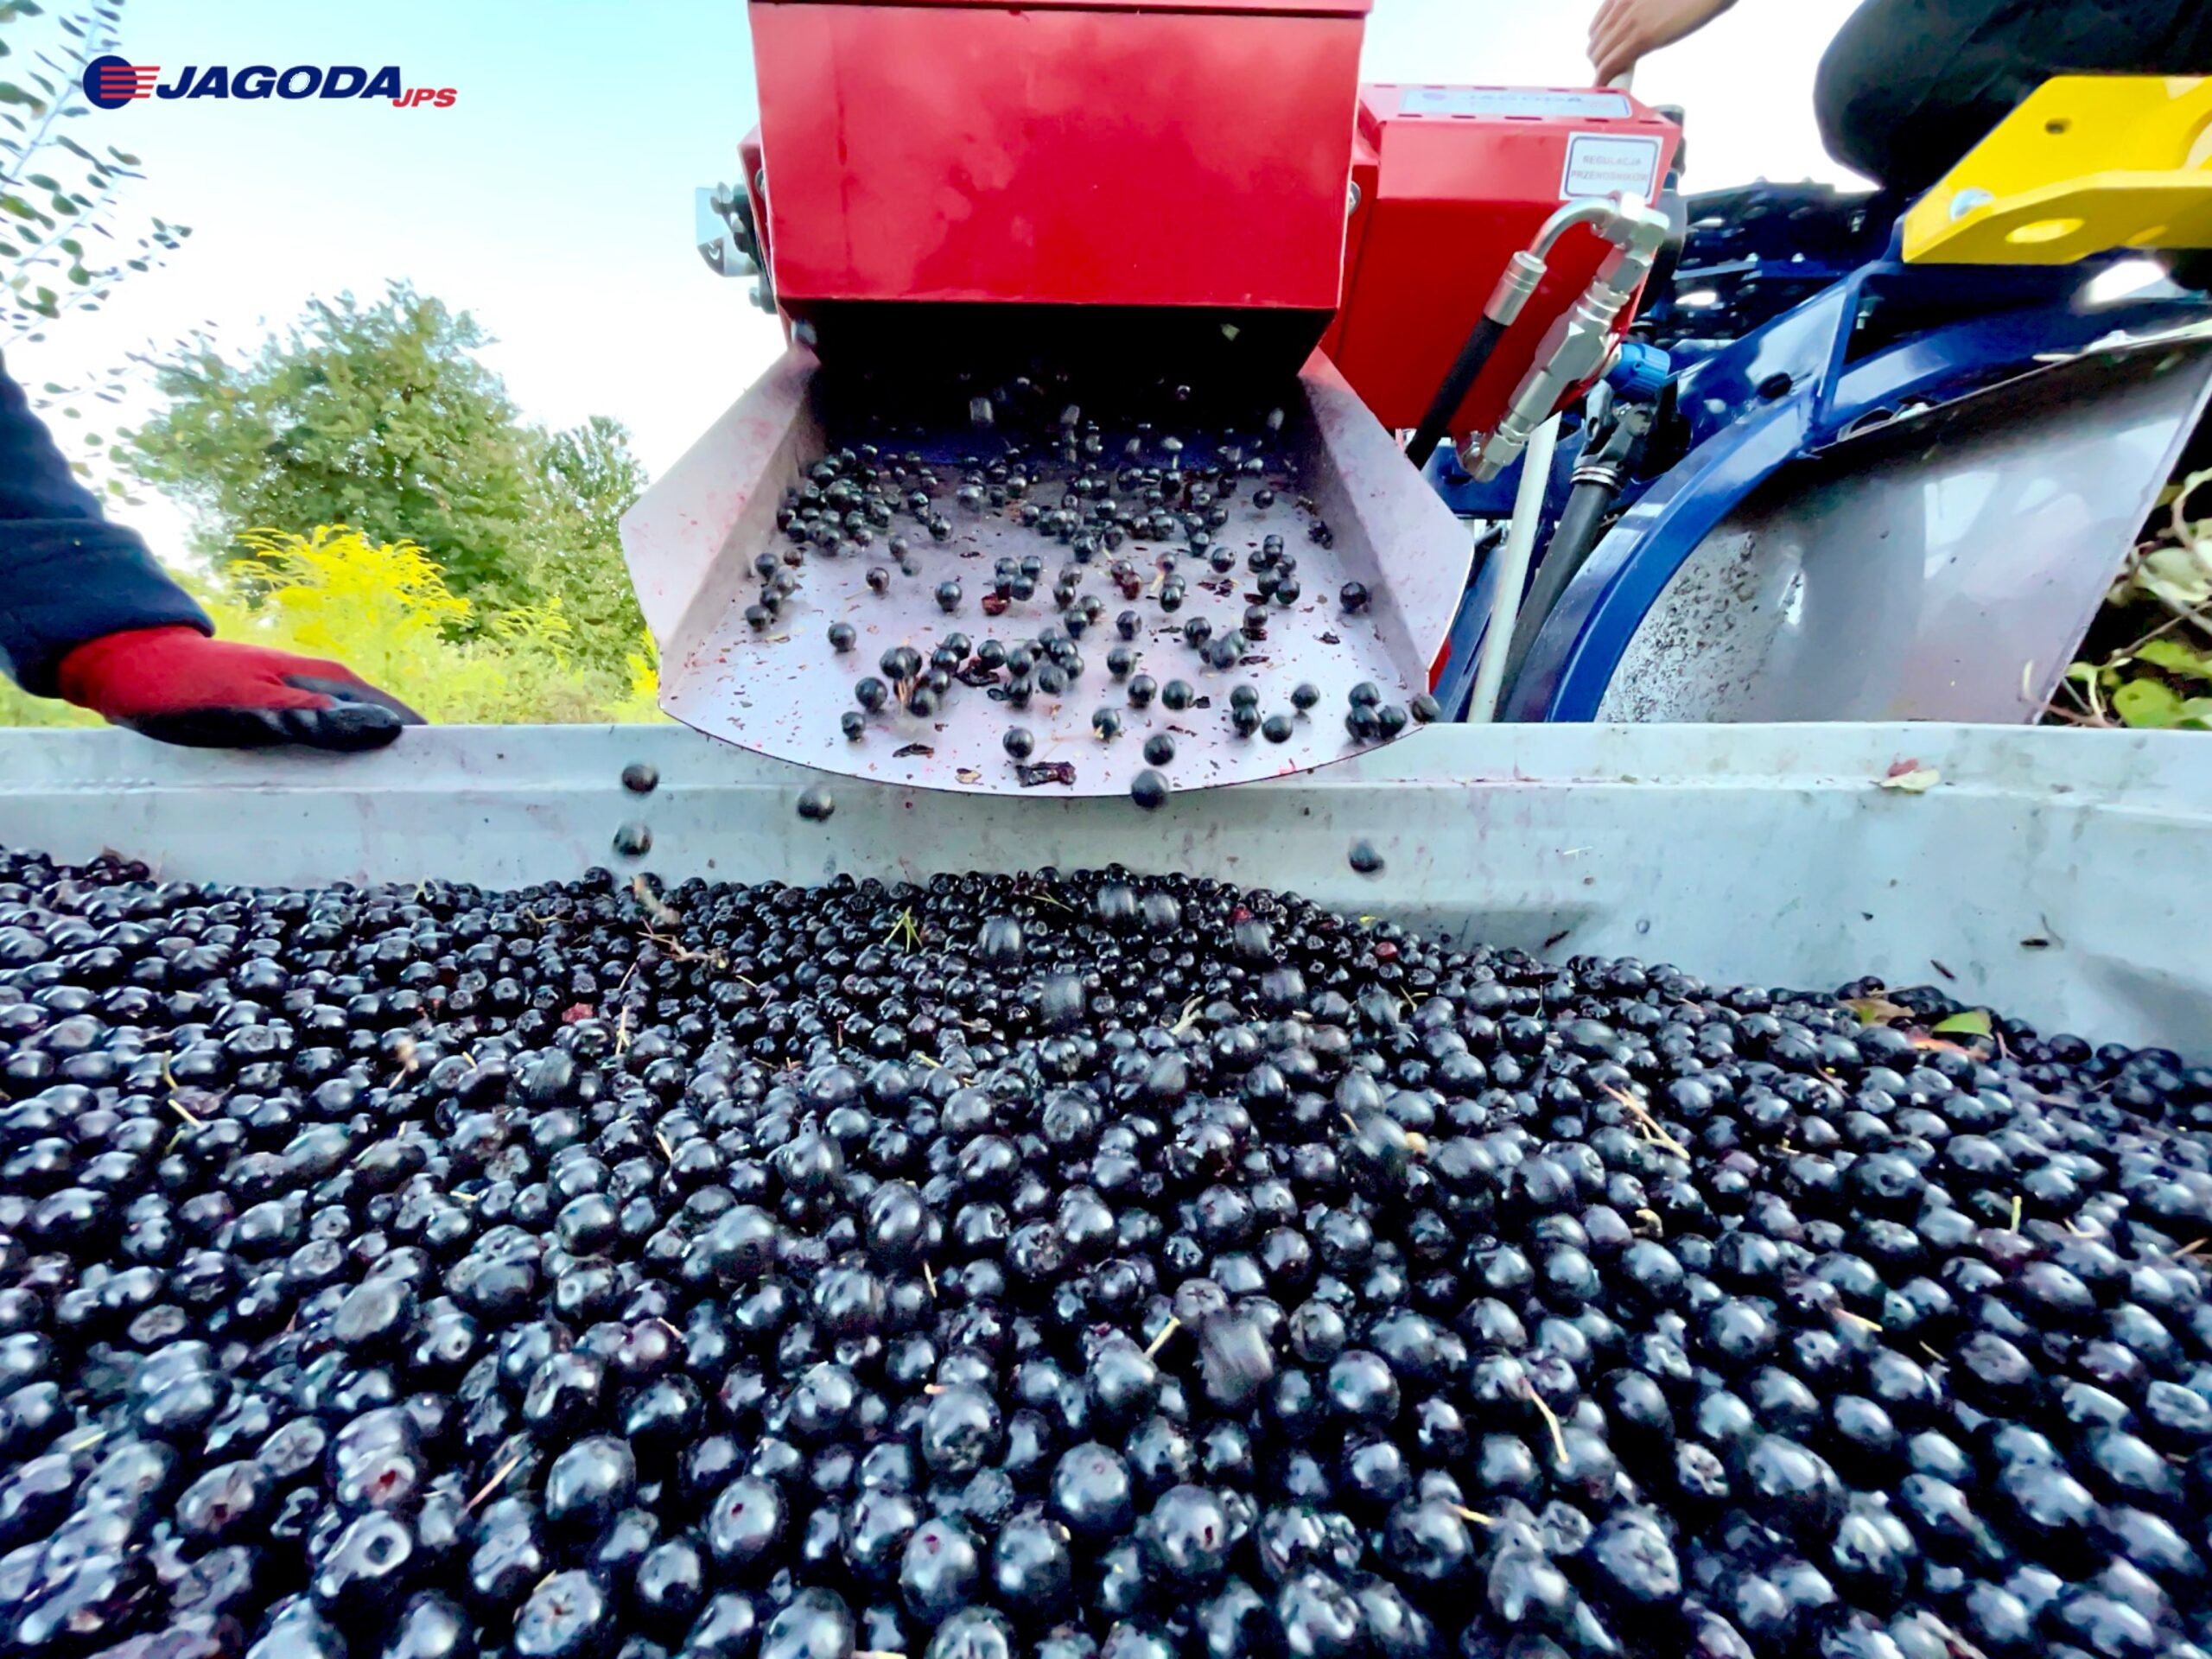 Beerenpflückmaschine OSKAR A01 - Effiziente Ernte für Beeren Plantagen. Bis zu 0,4 Hektar pro Stunde mit 95 % Erntegenauigkeit.<br />
die Früchte aus der ganzen Reihe erntet